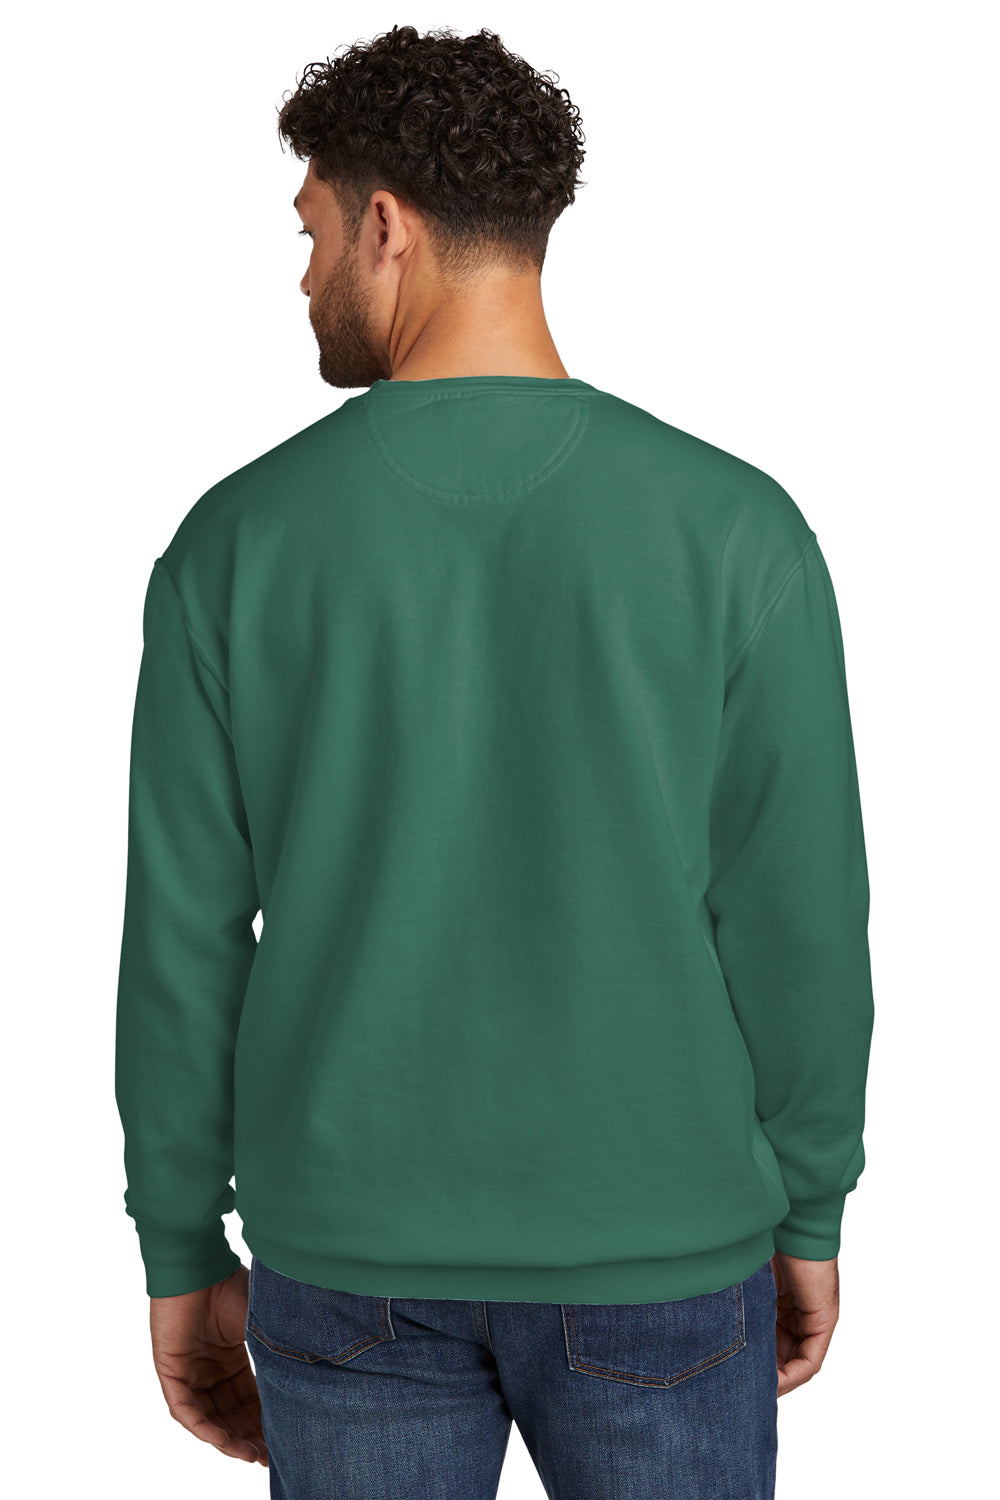 Comfort Colors 1566 Mens Crewneck Sweatshirt Light Green Back